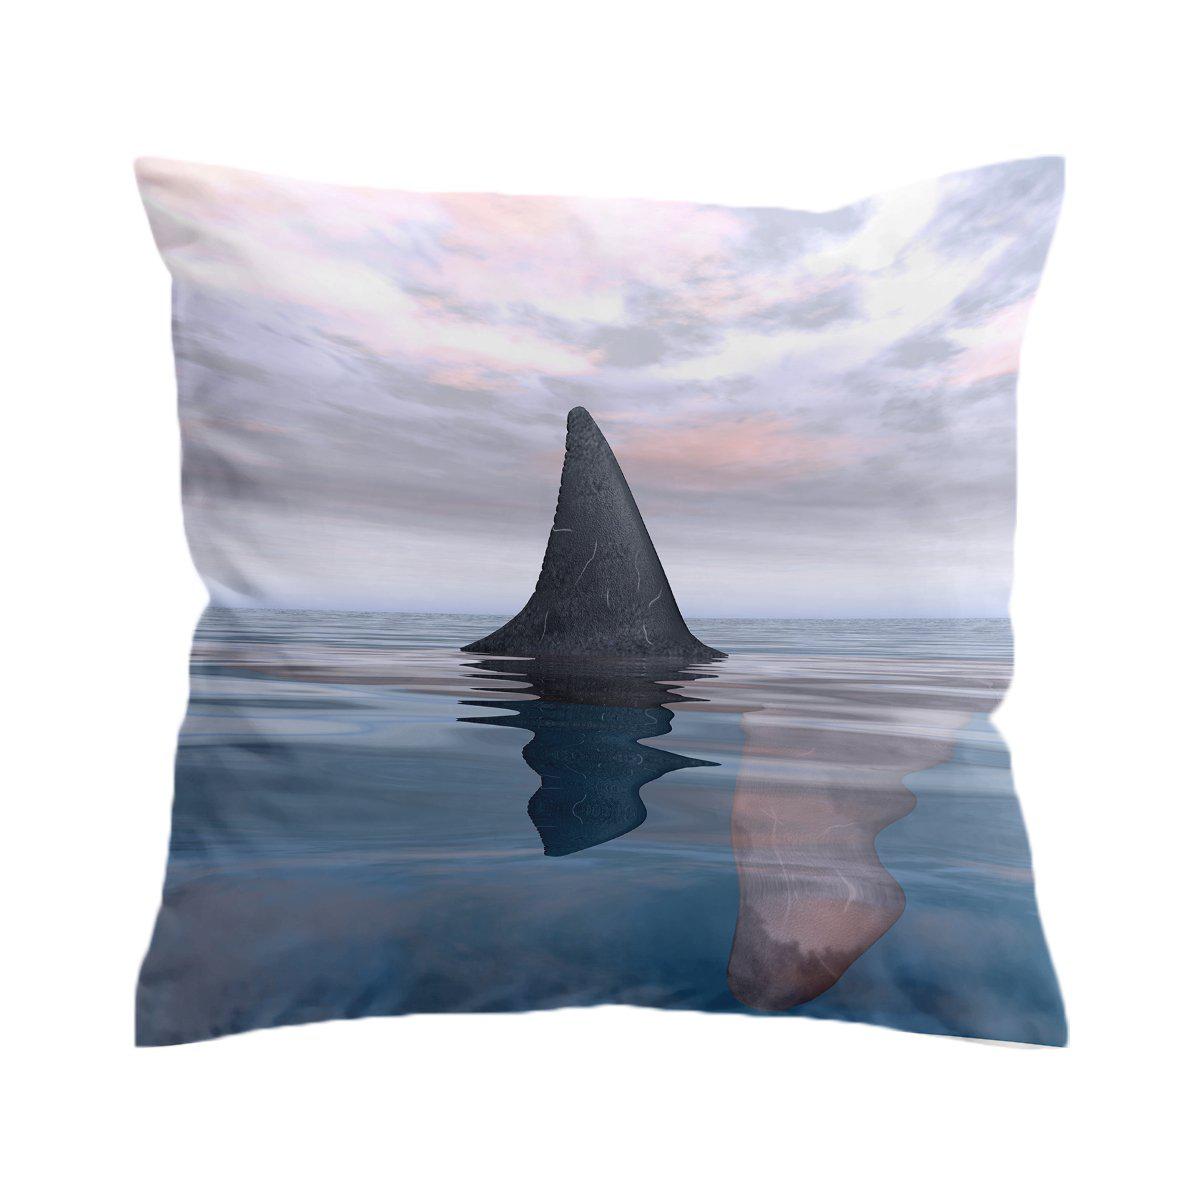 The Shark Fin Pillow Cover